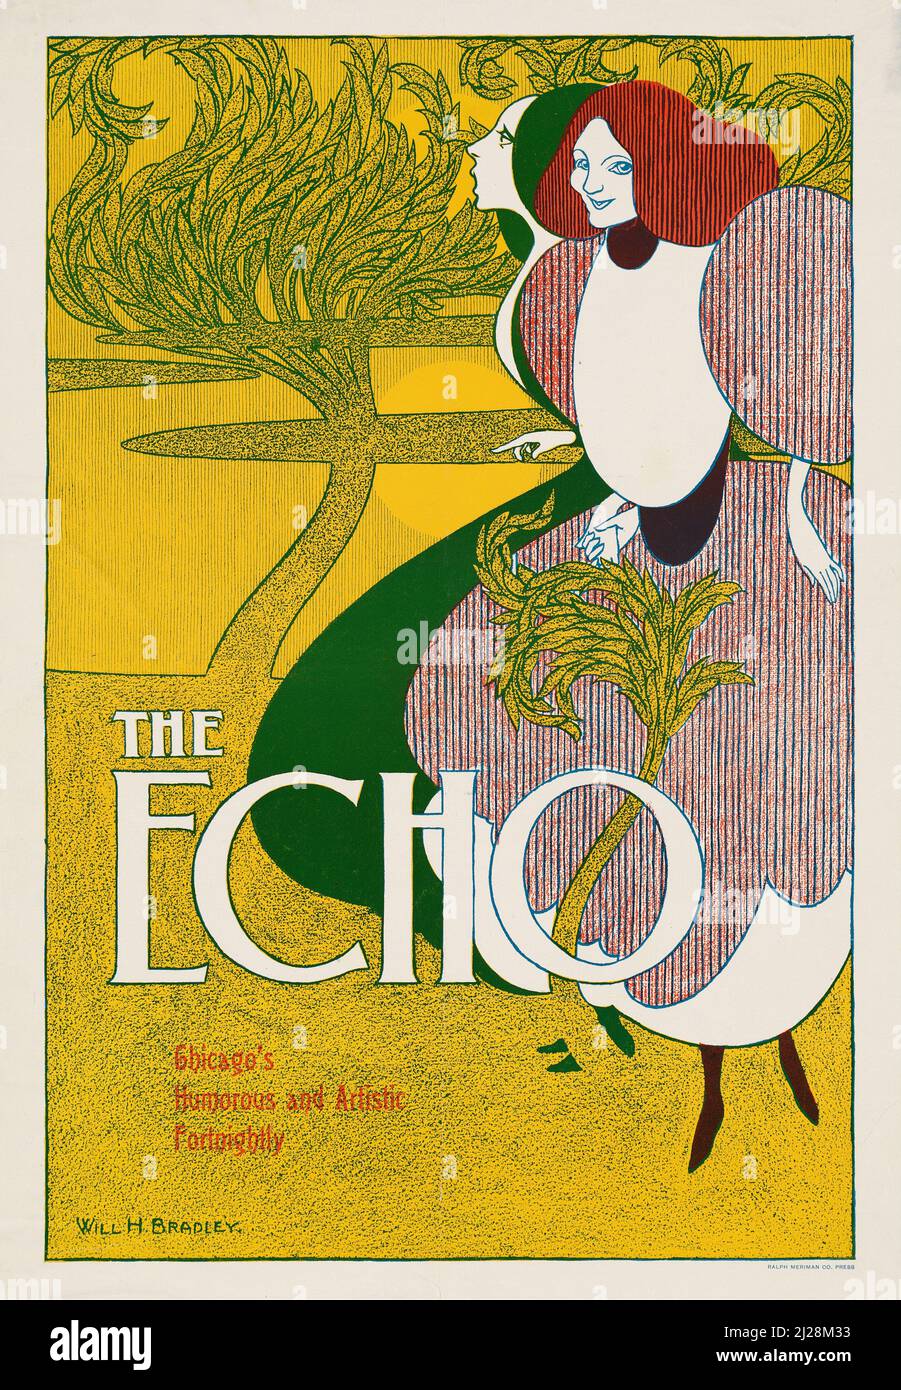 Will Bradley Artwork - The Echo - Chicagos humorvolle und künstlerische vierzehn Tage (1895) American Art Nouveau - Alte und Vintage Poster / Magazin Cover. Stockfoto